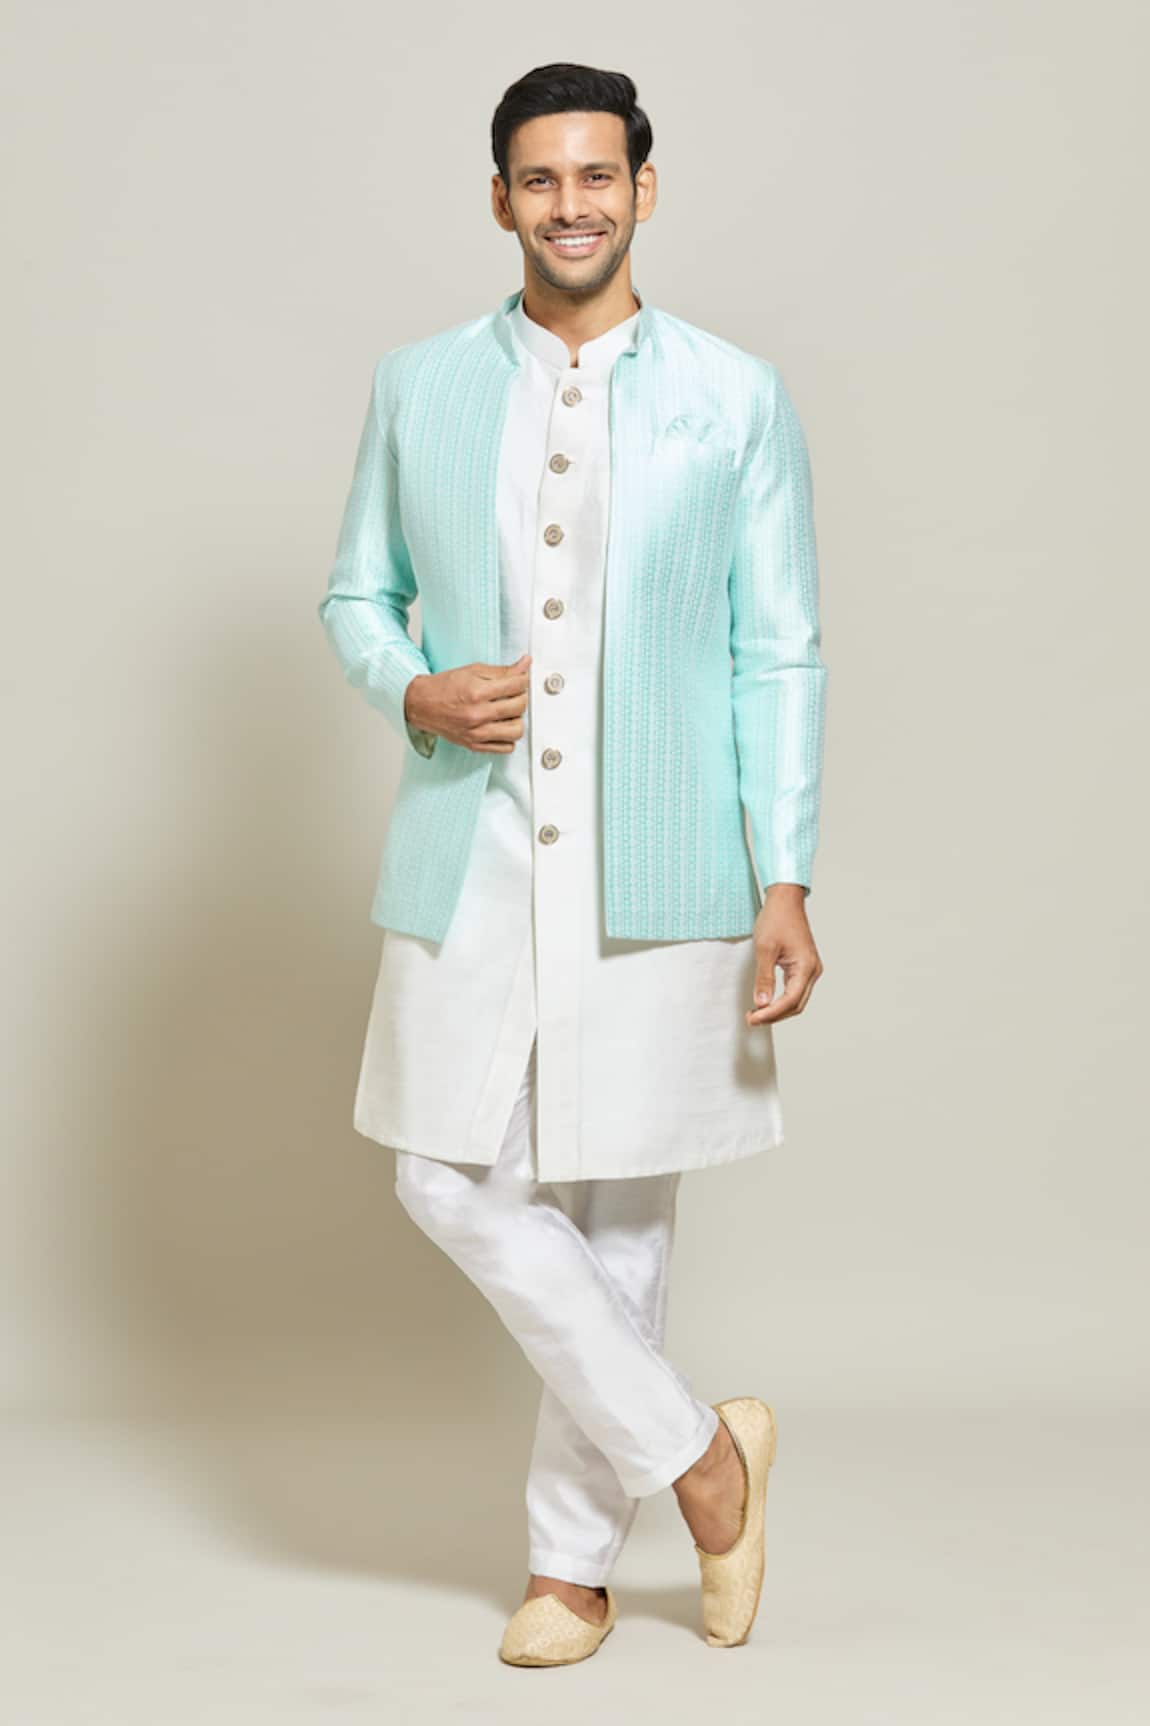 Aryavir Malhotra Jacquard Jacket Pant Set